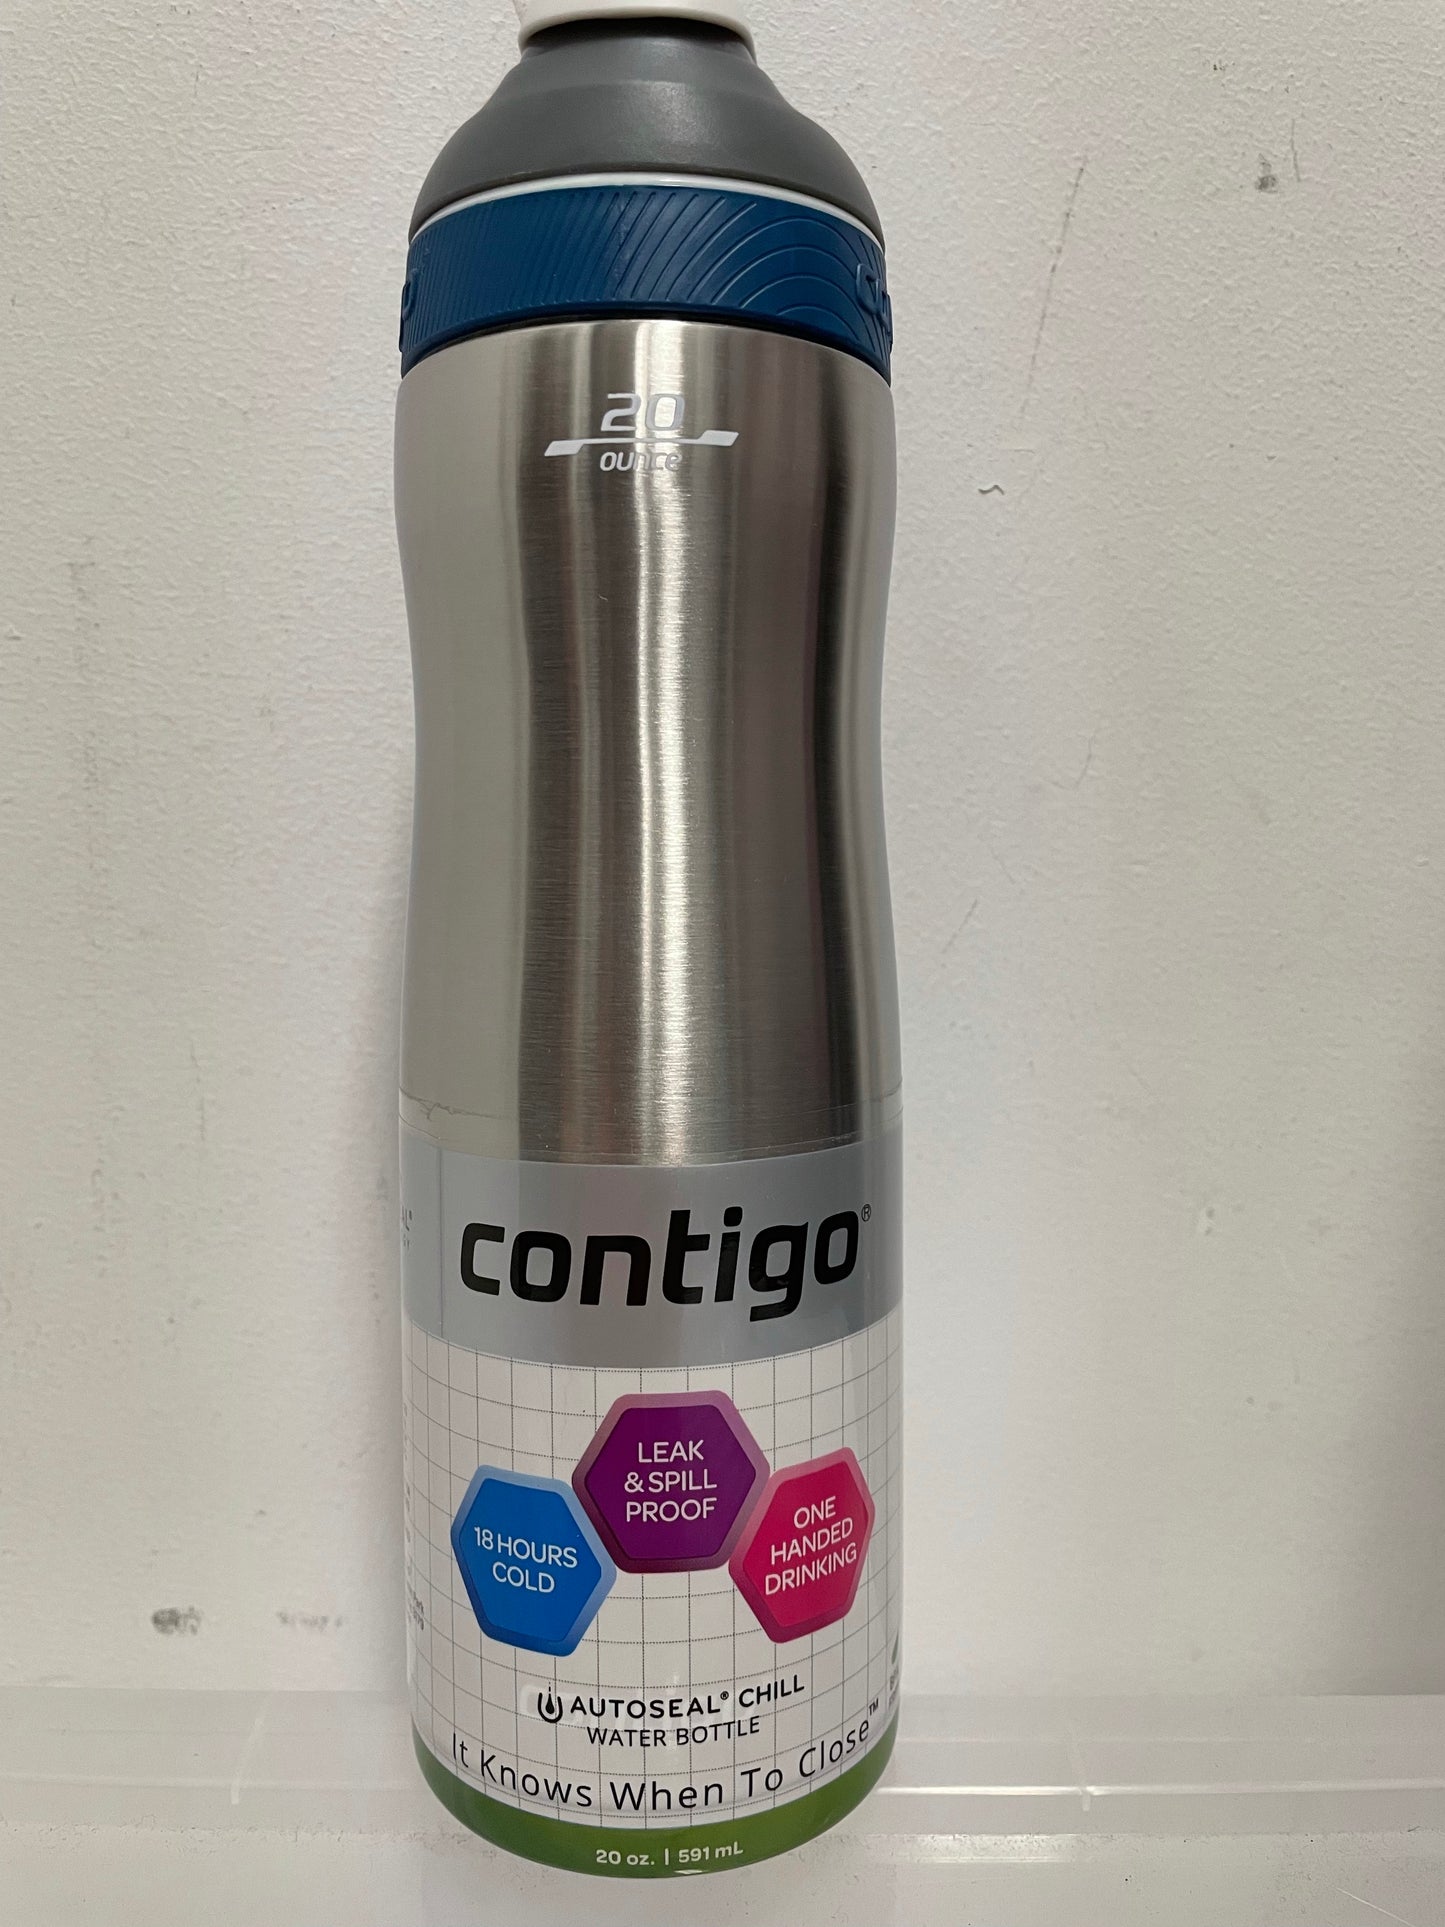  Contigo Autoseal Cortland Water Bottle, 24 Oz, Greyed